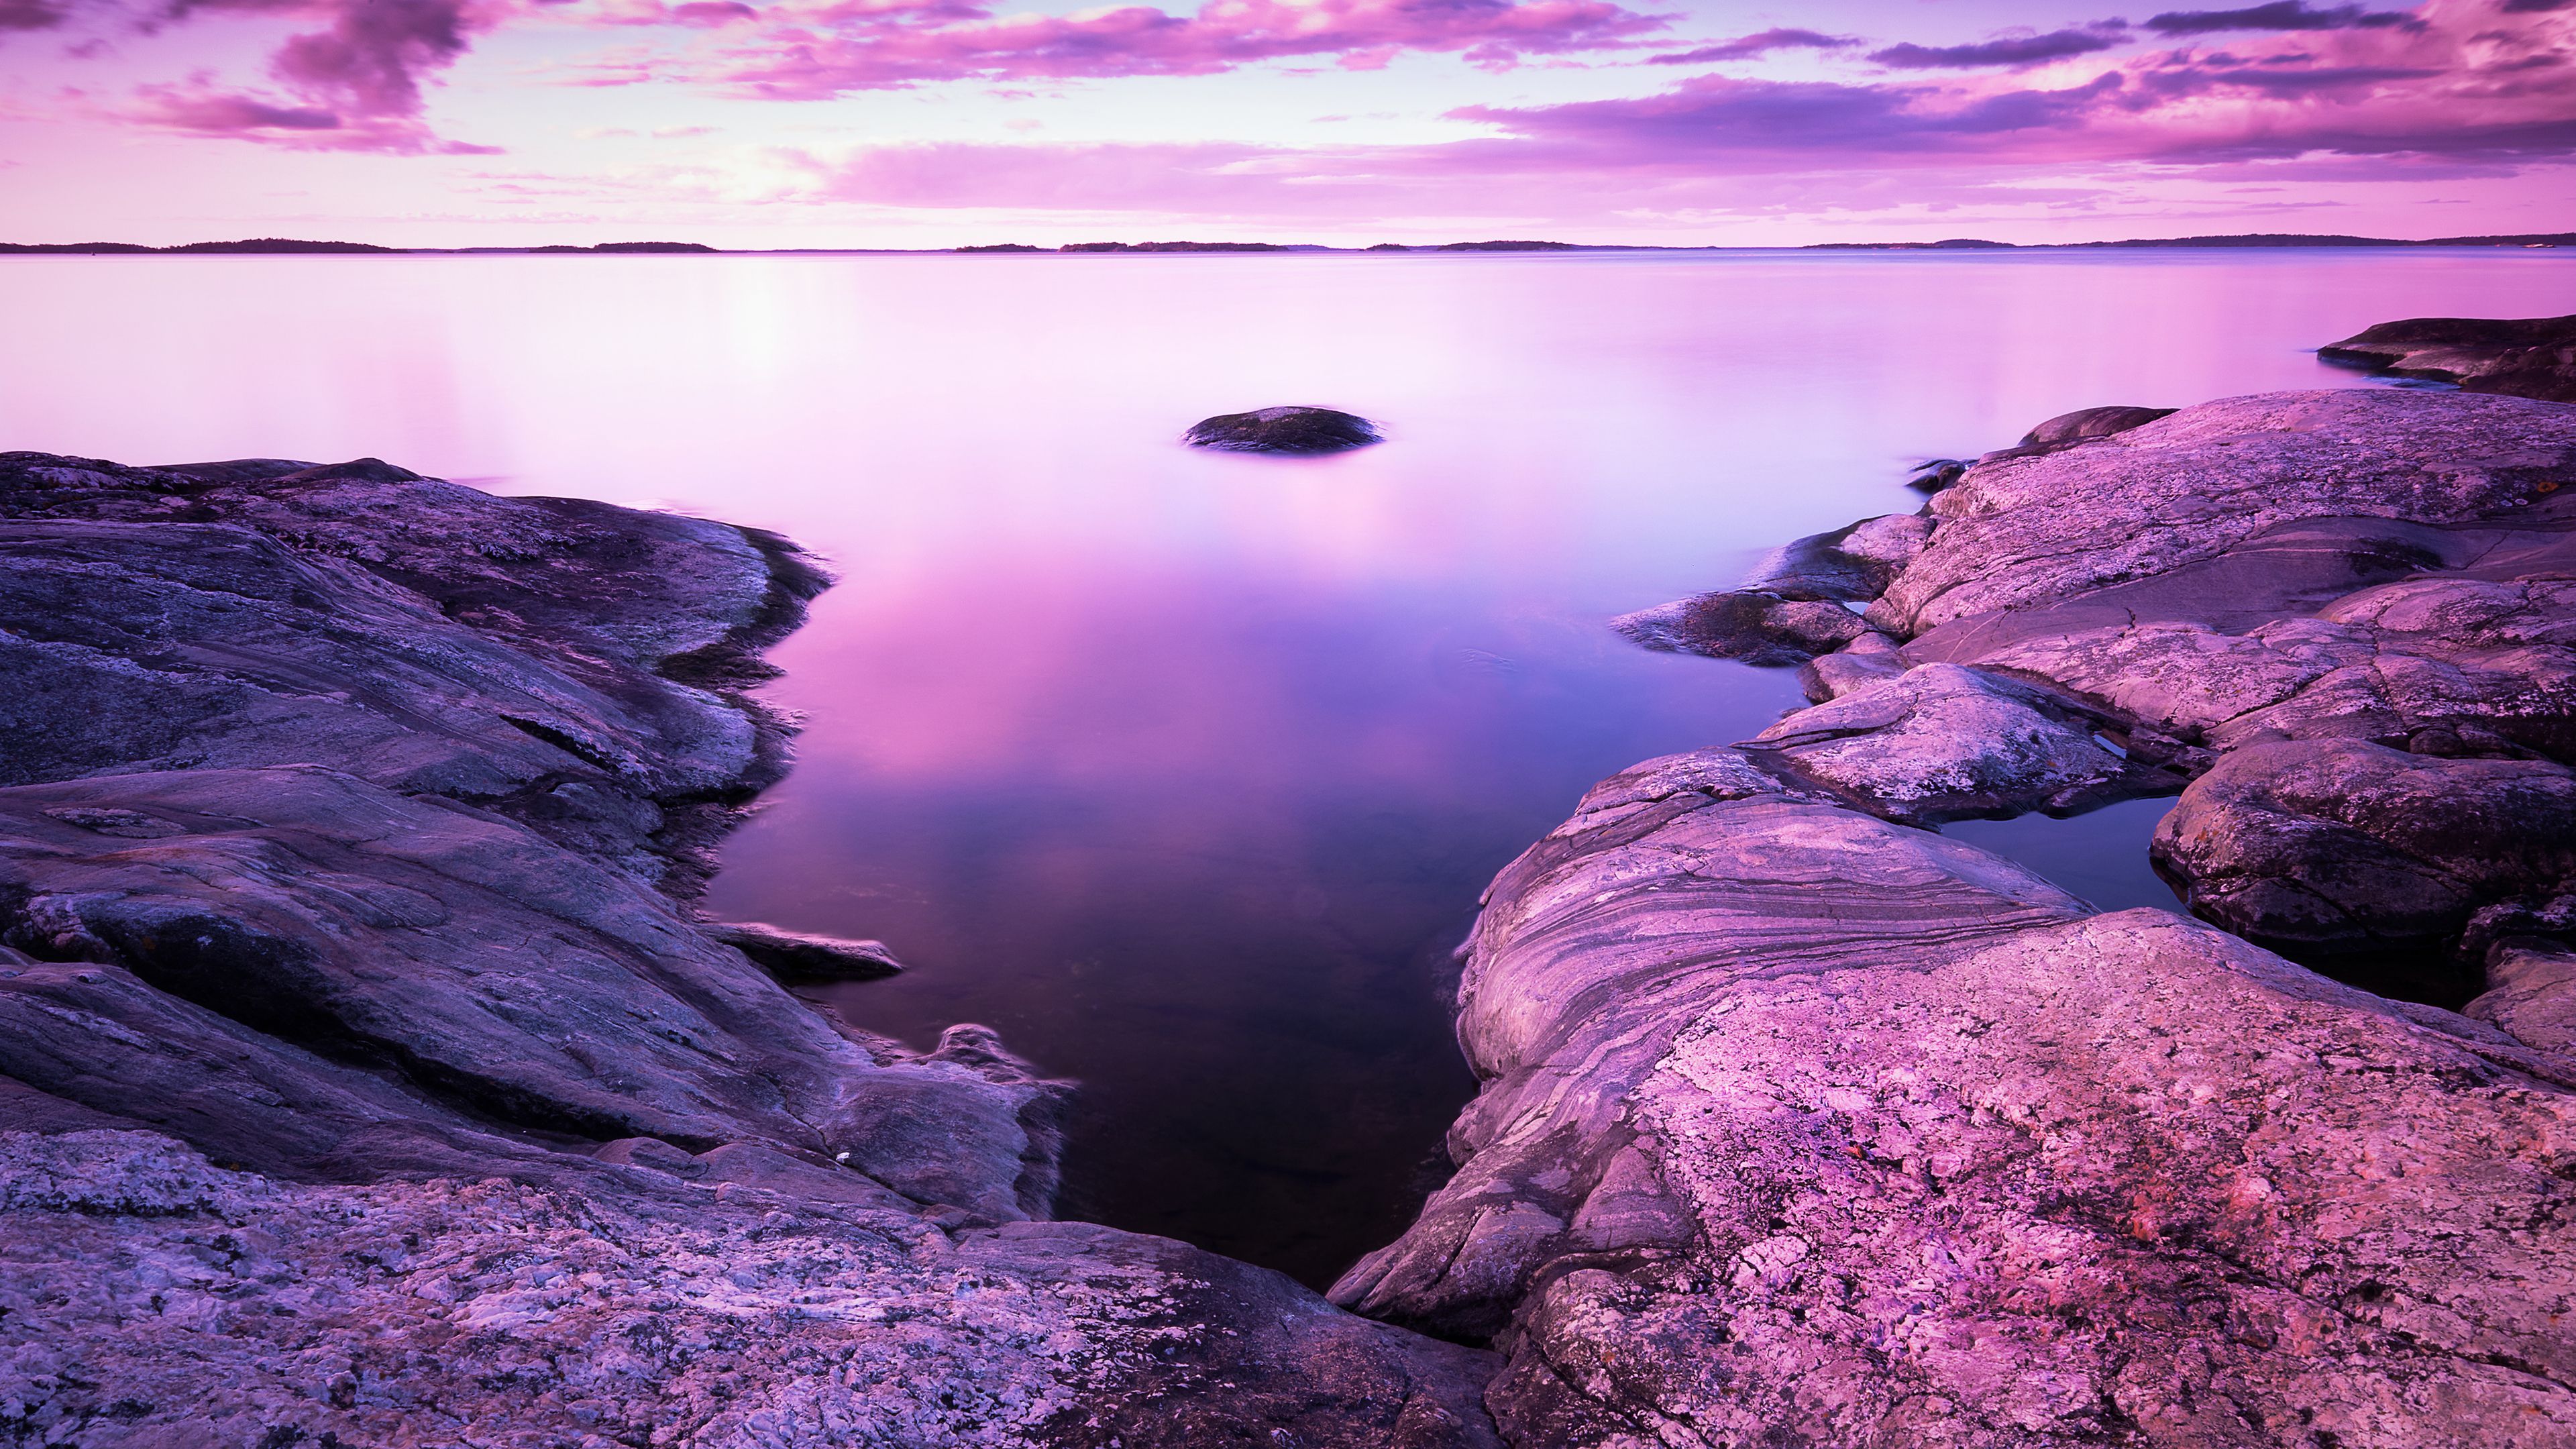 Sunset, Scenery, Rocks, Lake, Purple sky, Pink, 4k Free deskk wallpaper, Ultra HD